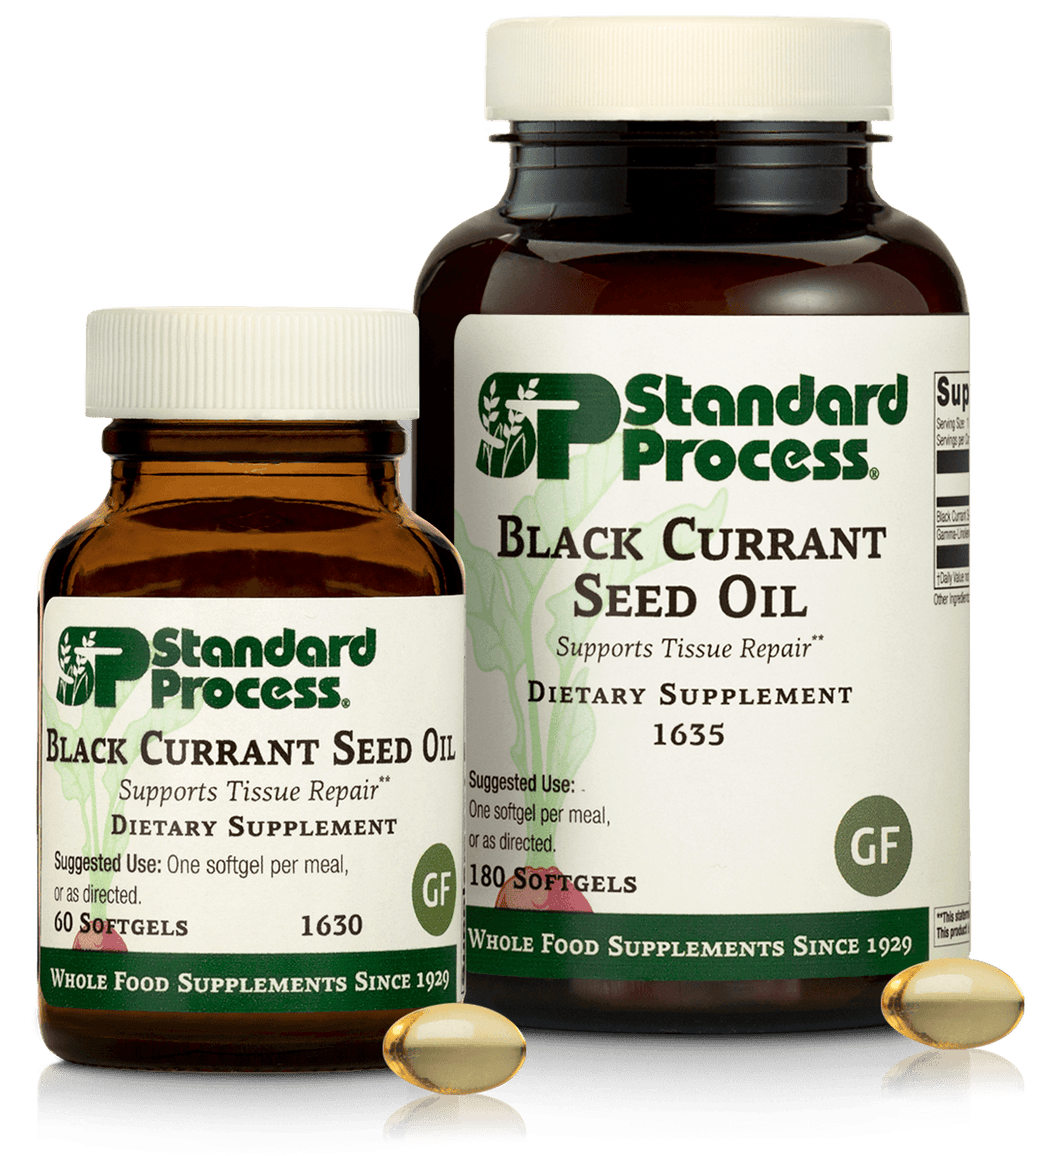 Black Currant Seed Oil